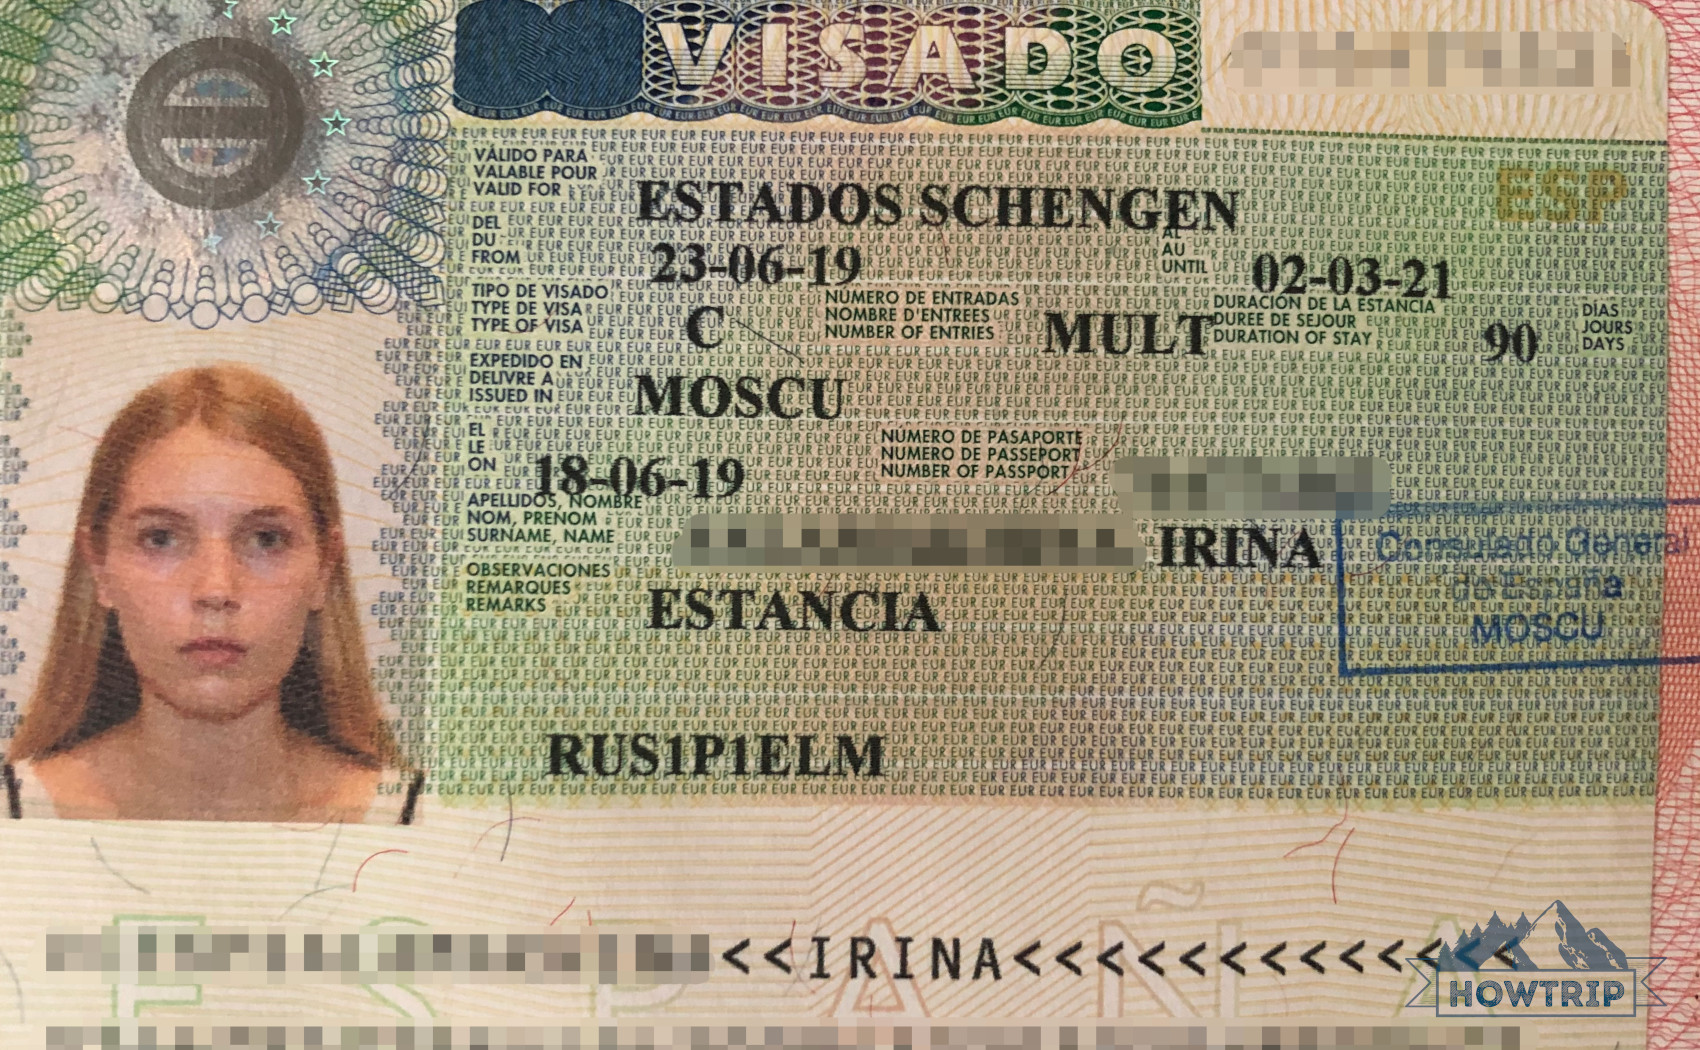 Виза в испанию 2021 для россиян — документы, стоимость, образец оформления визы в испанию